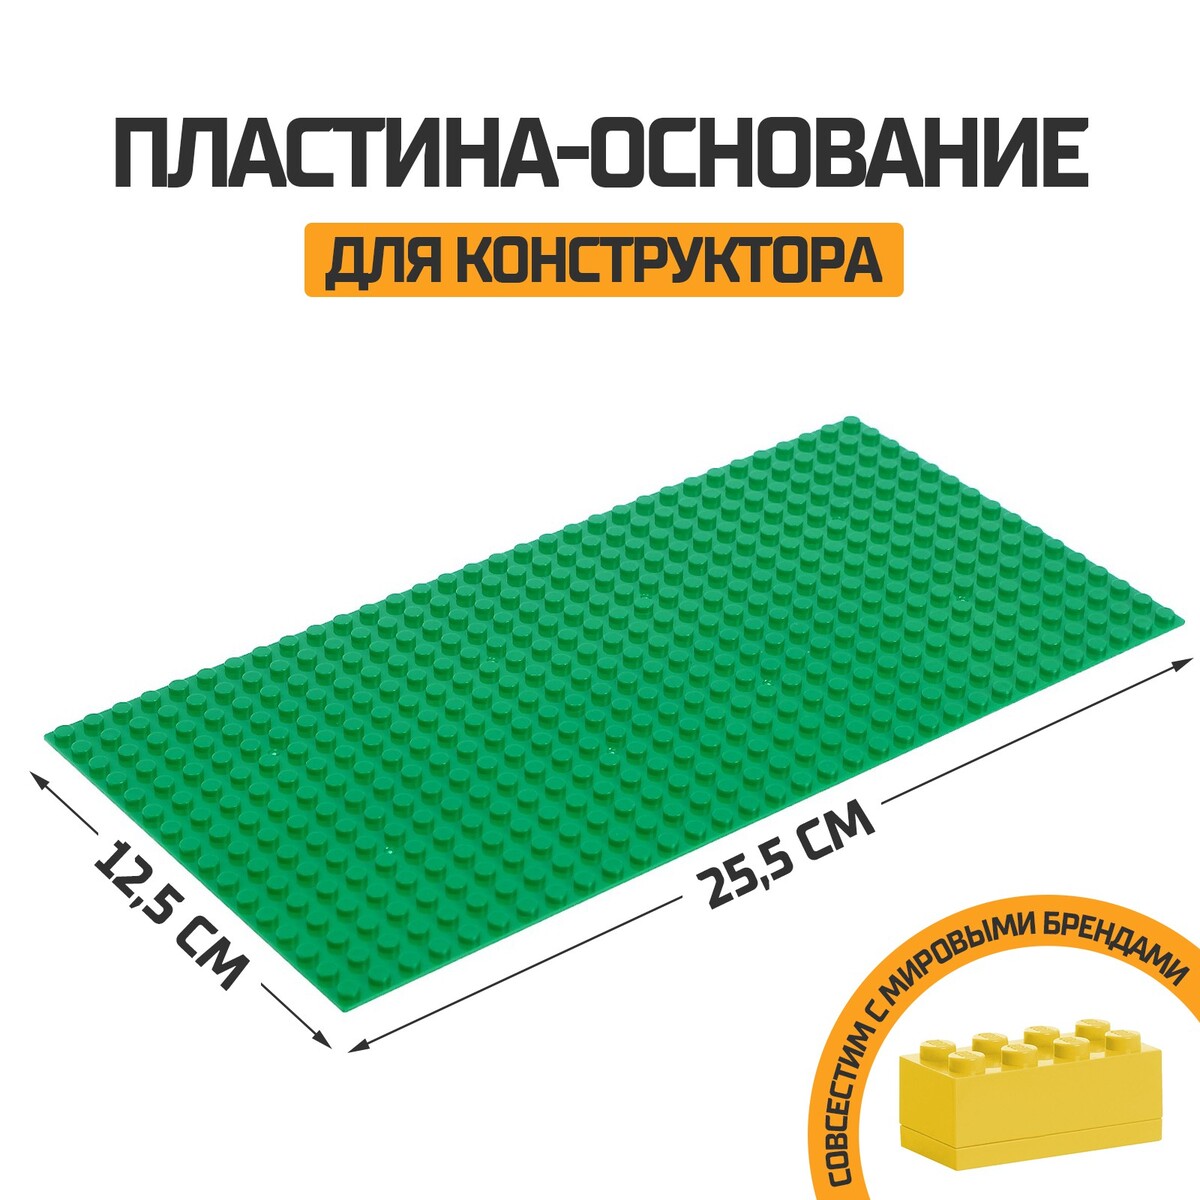 Пластина-основание для конструктора, 25,5 х 12,5 см, цвет зеленый пластина основание для конструктора 12 8 × 12 8 см салатовый